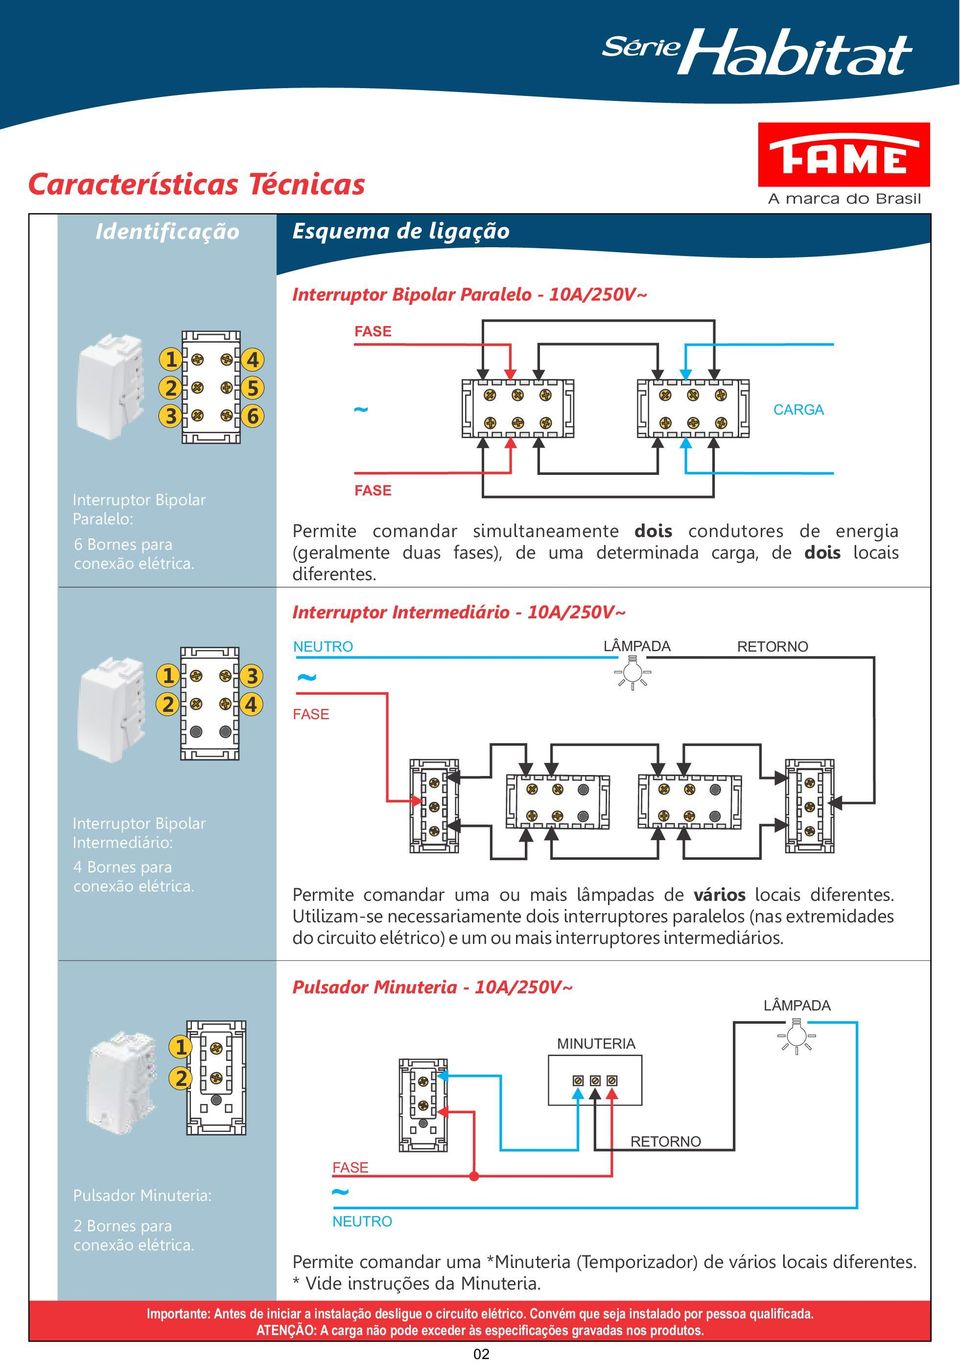 Interruptor Intermediário - 0A/250V~ 3 2 4 FAE RETORNO Interruptor Bipolar Intermediário: 4 Bornes para Permite comandar uma ou mais lâmpadas de vários locais diferentes.